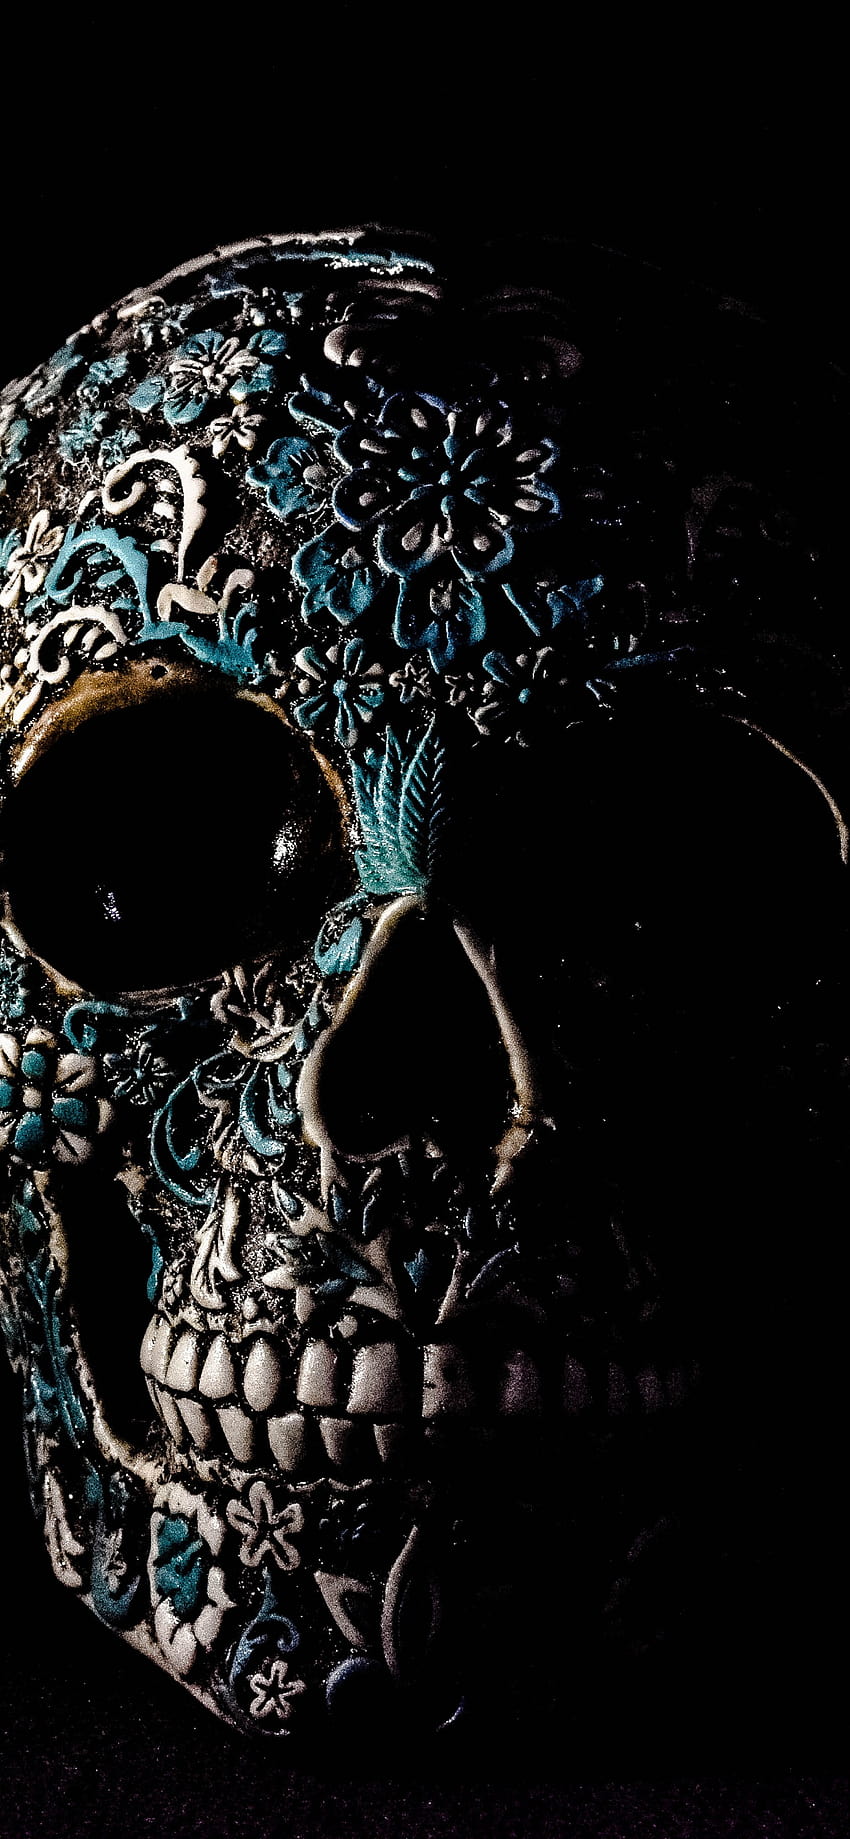 頭蓋骨 , 人間, 骨格, 黒い背景, アート, グラフィックス CGI, 骸骨の頭蓋骨 HD電話の壁紙